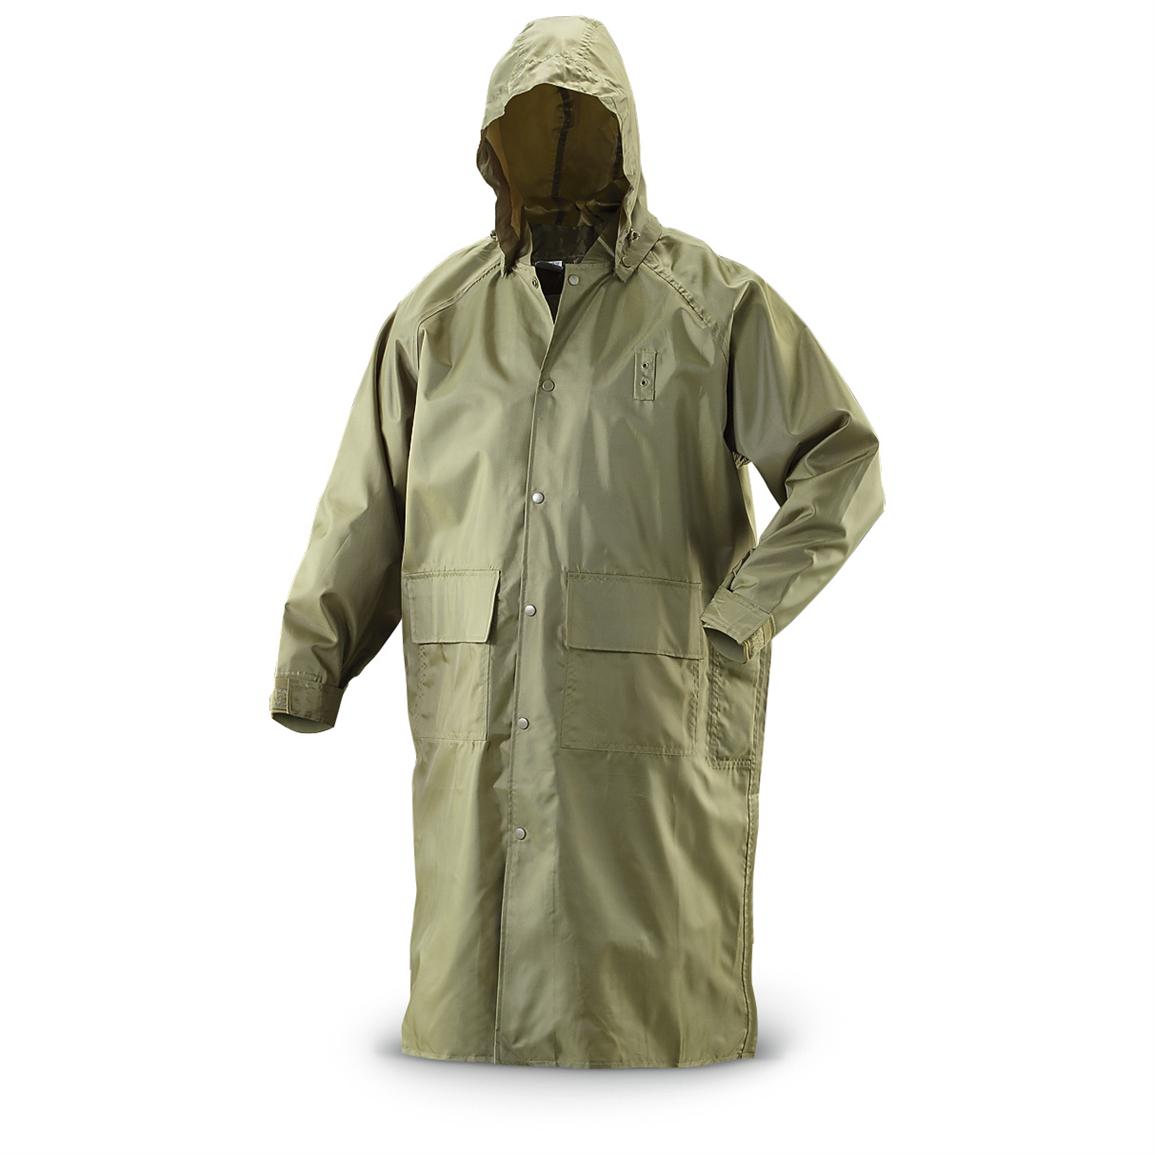 New U.S. Military Surplus Police Rain Coat, Olive Drab - 294178, Rain ...